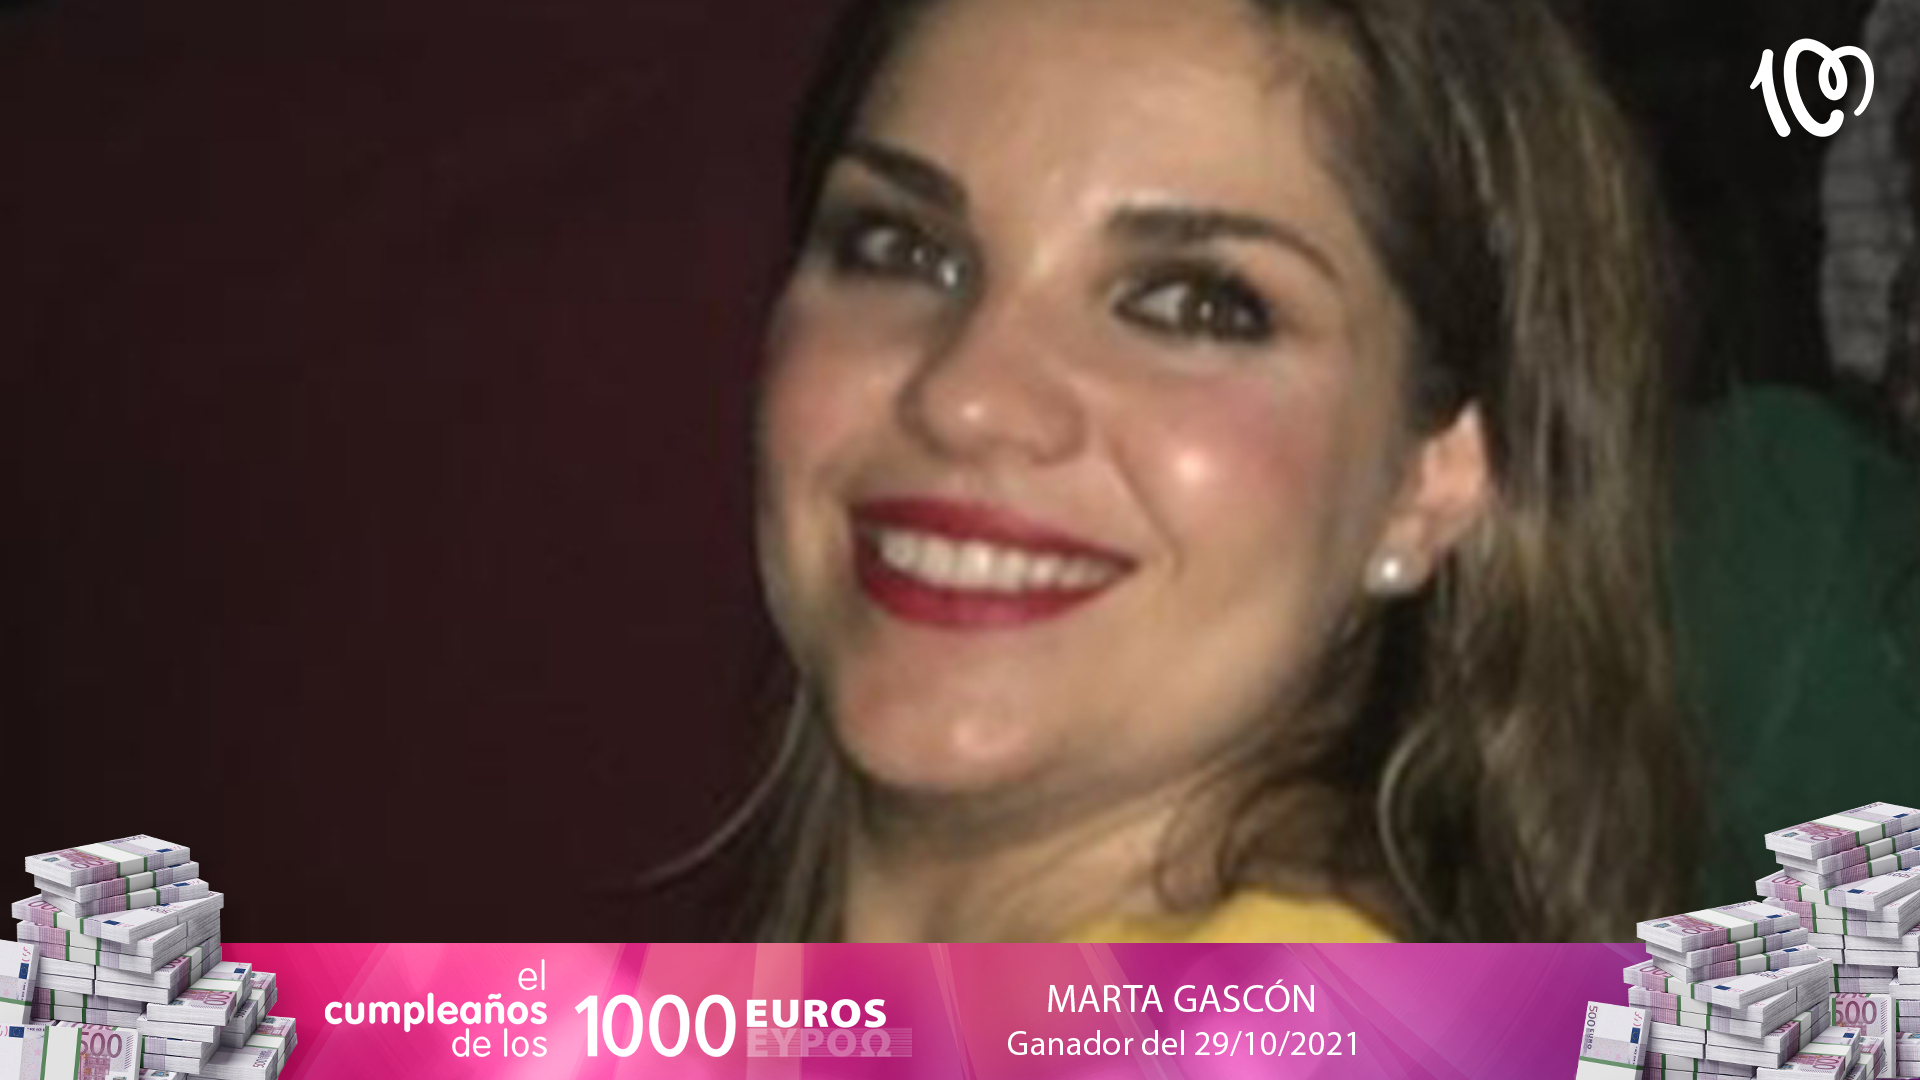 Marta ganadora de 1.000 euros: "¡Es impresionante!"